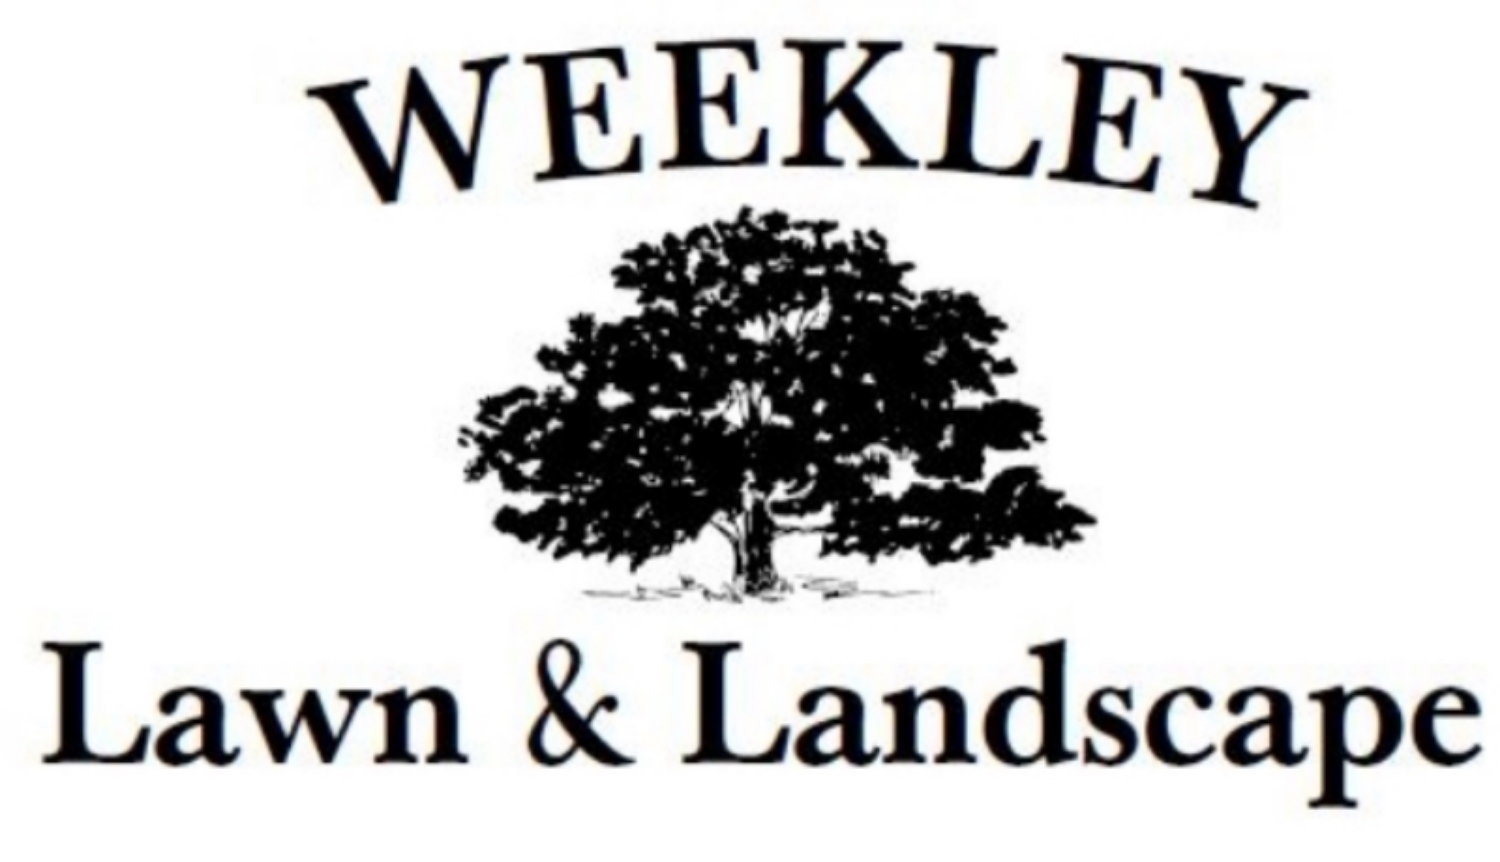 Weekley Lawn  Landscape Co Inc.